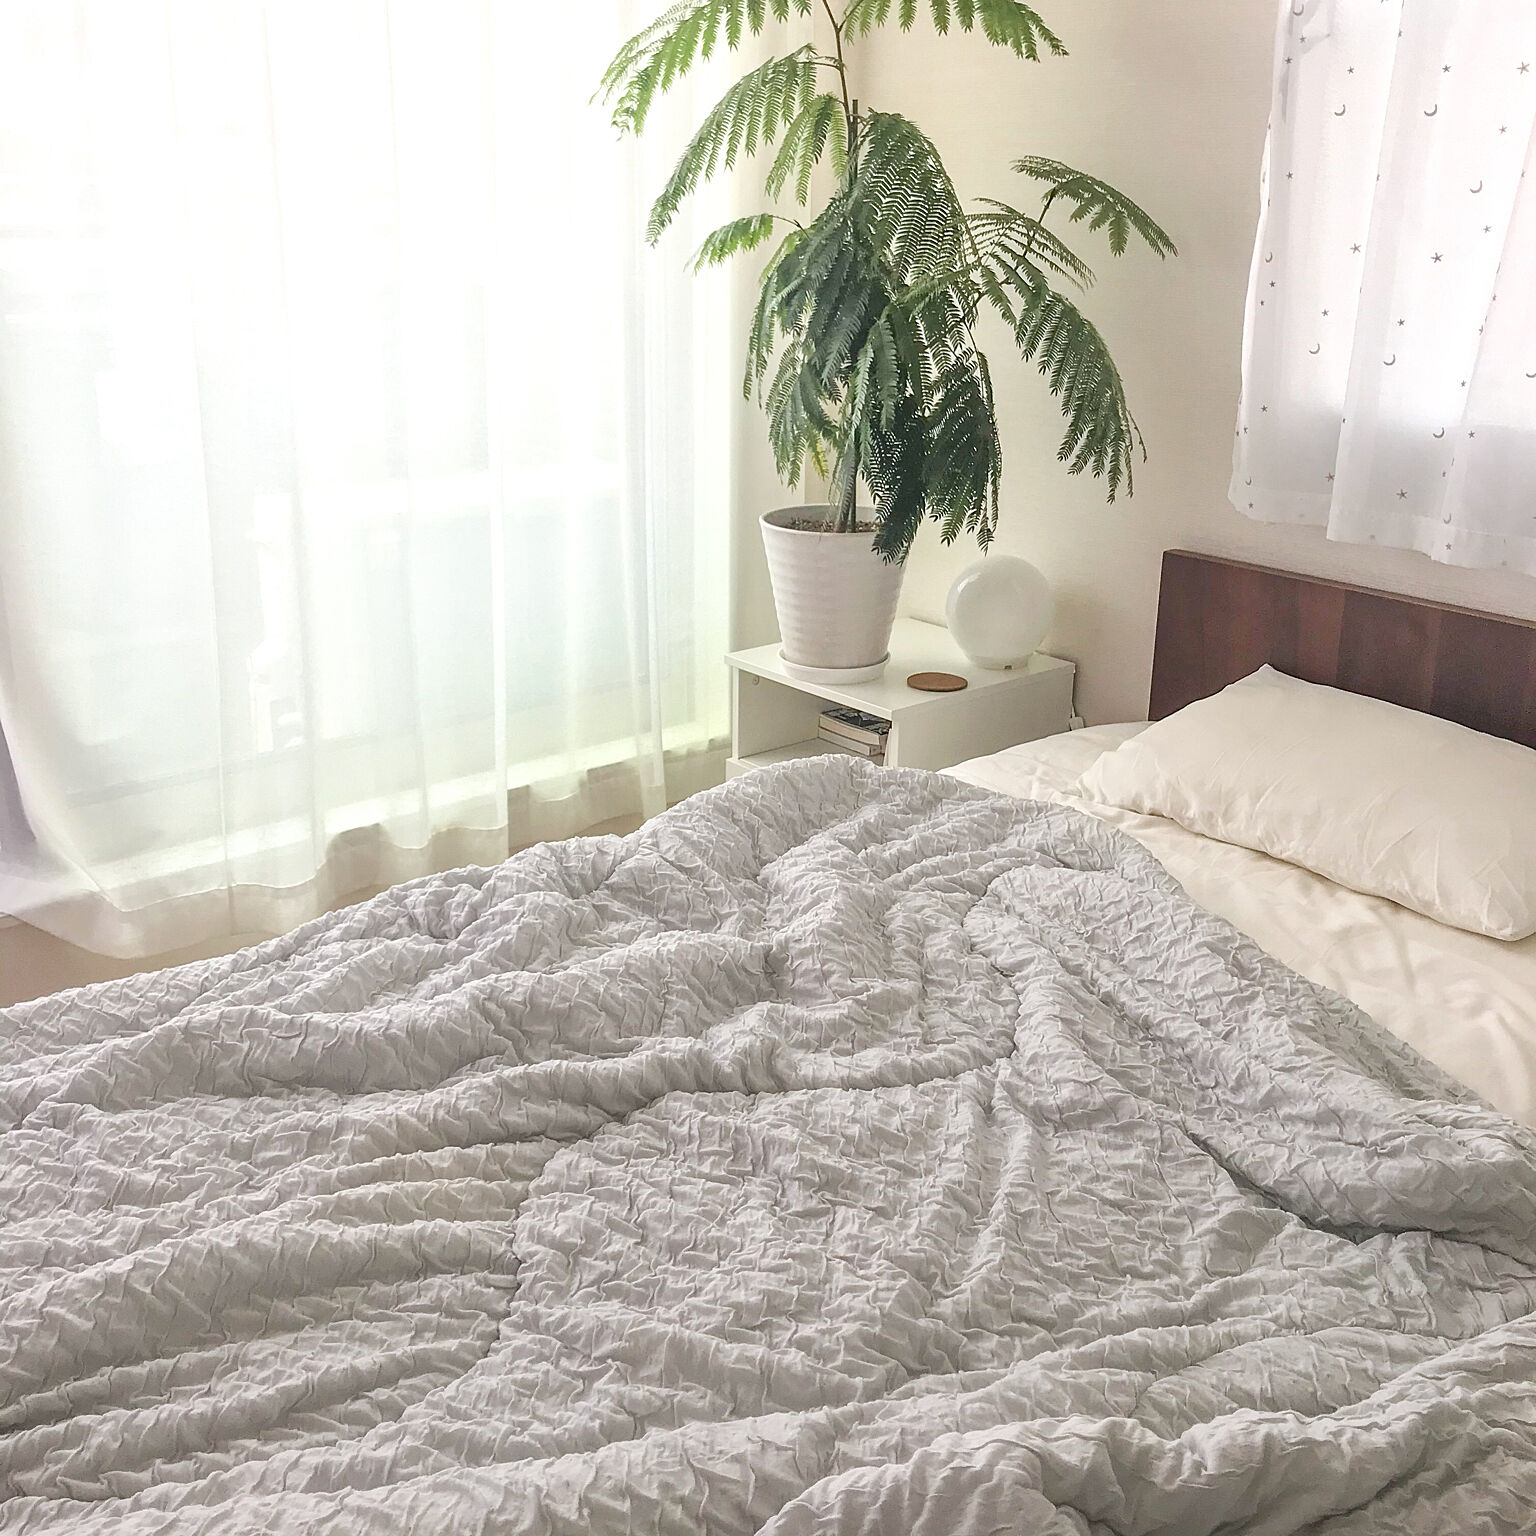 寝苦しさにさようなら 暑い夏の夜を快適にしてくれるおすすめ寝具 Roomclip Mag 暮らしとインテリアのwebマガジン